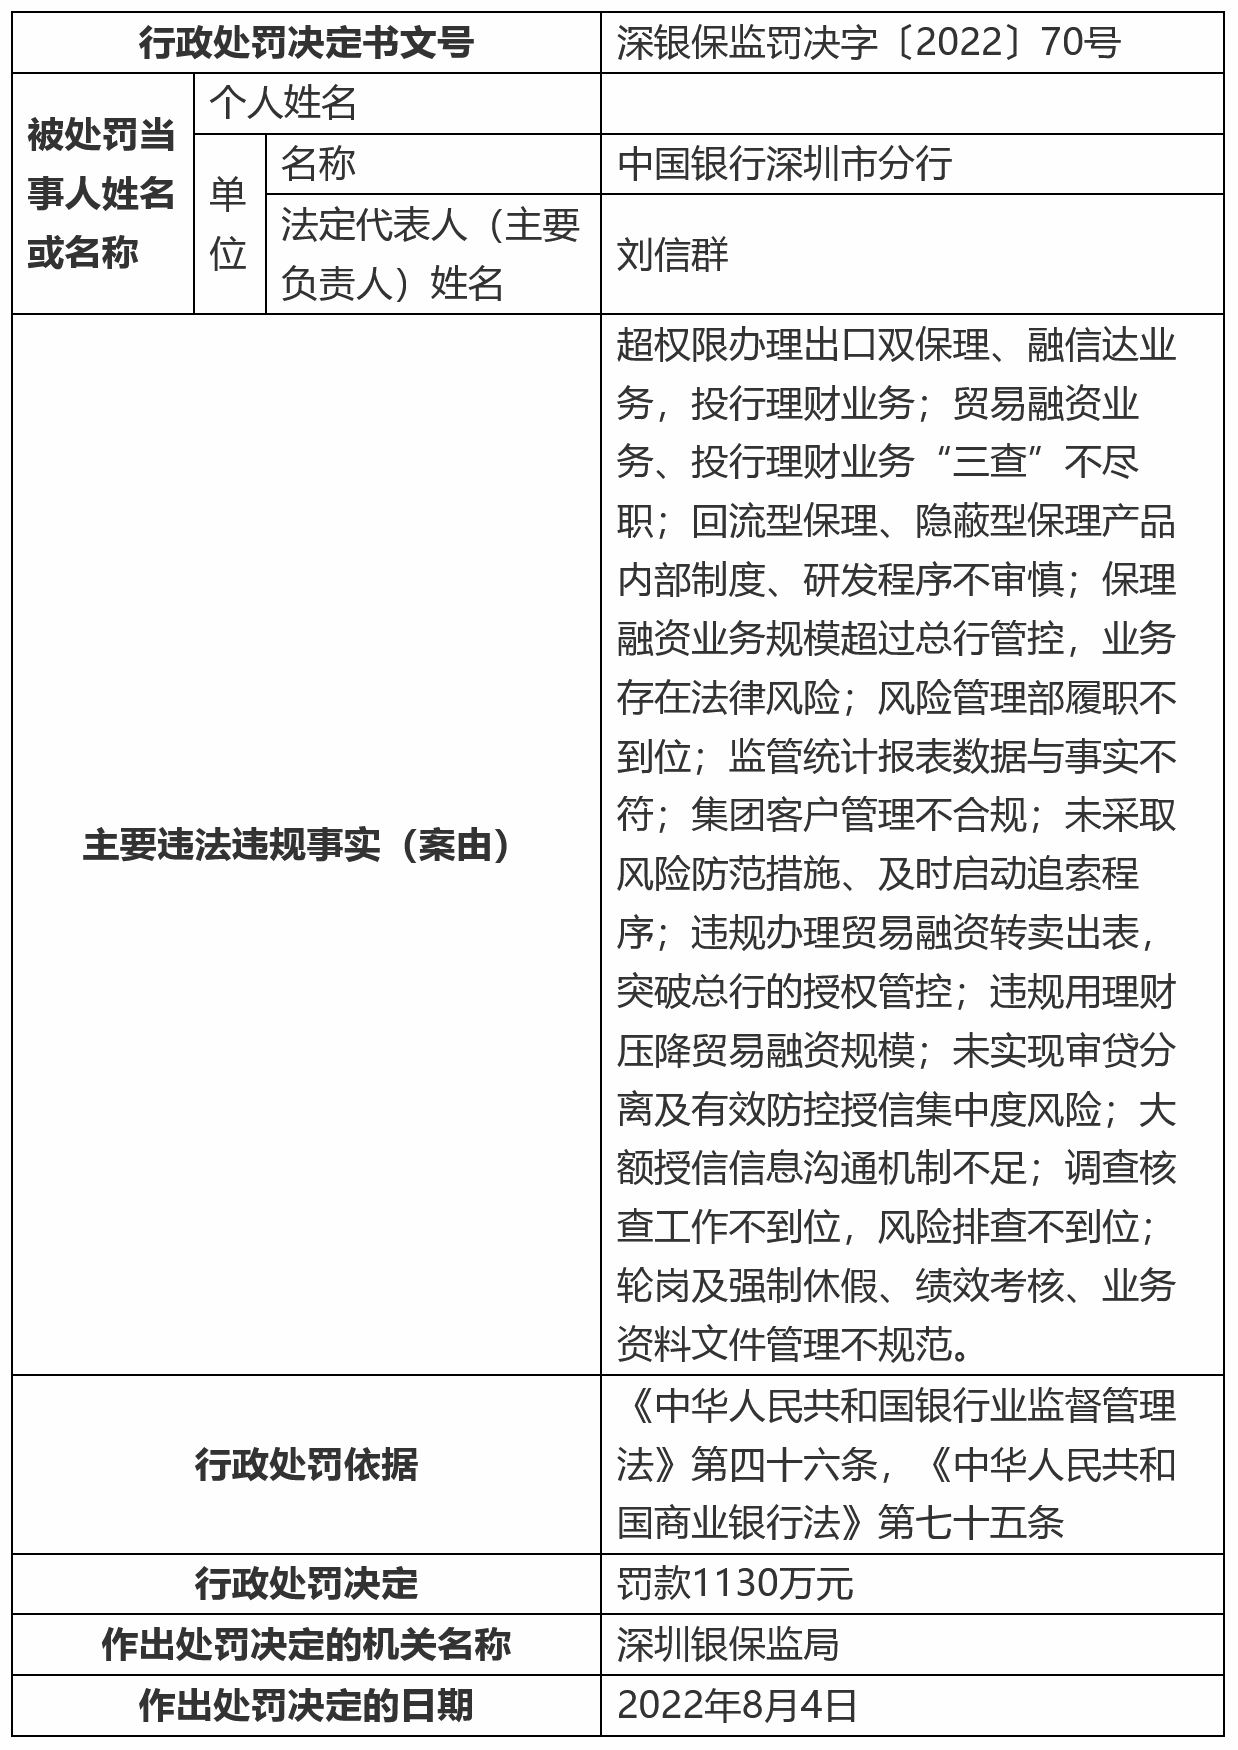 中行深圳分行收千万级罚单 4人被终身禁业